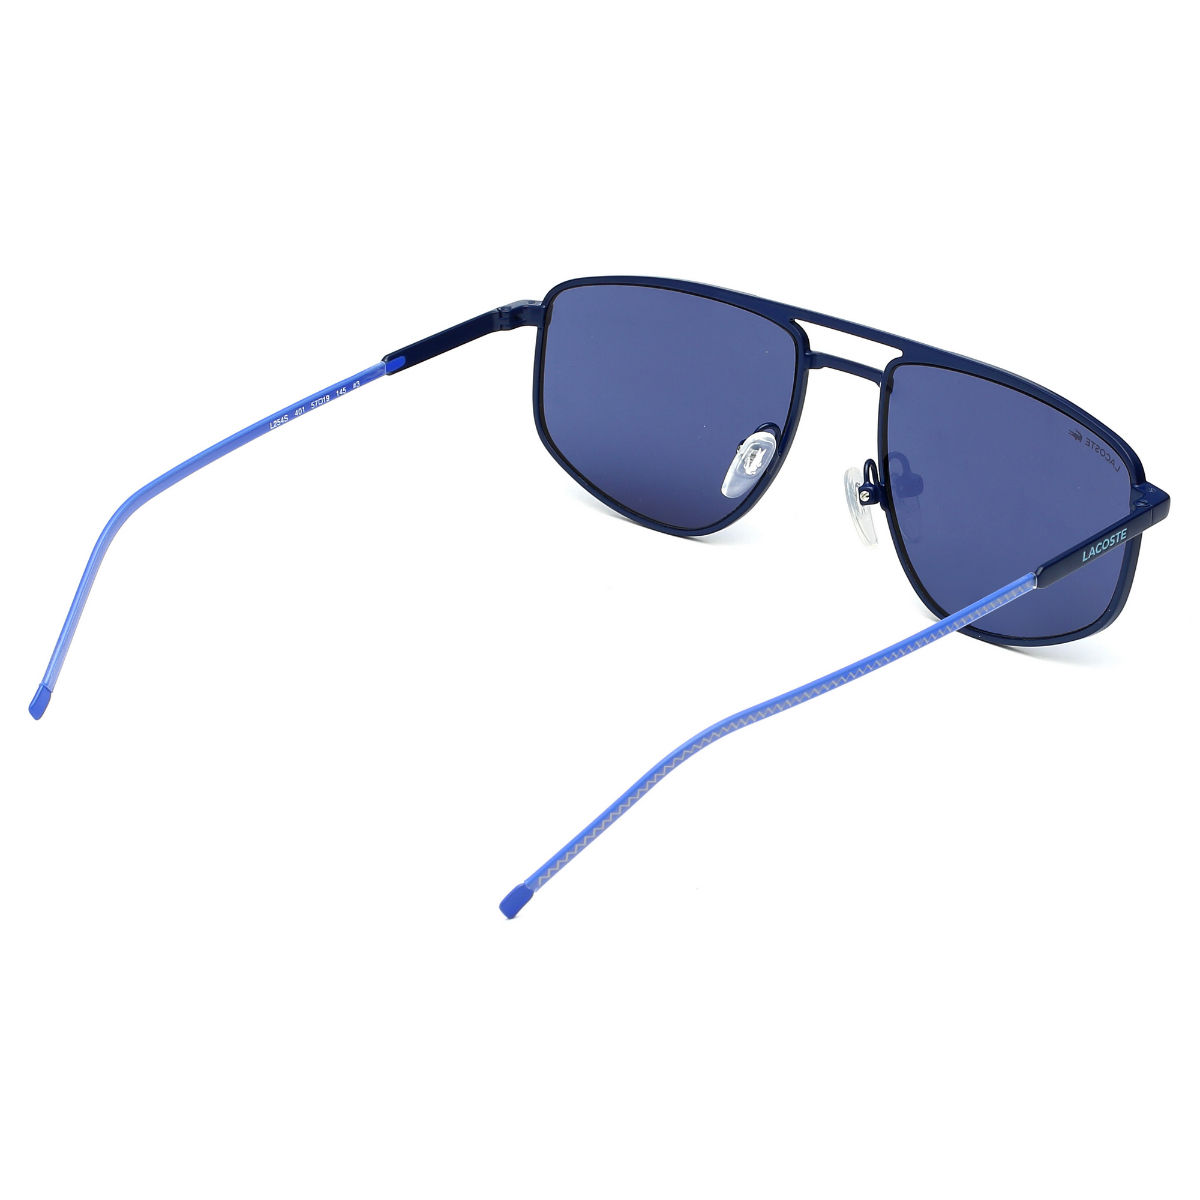 Lacoste L995s men Sunglasses online sale